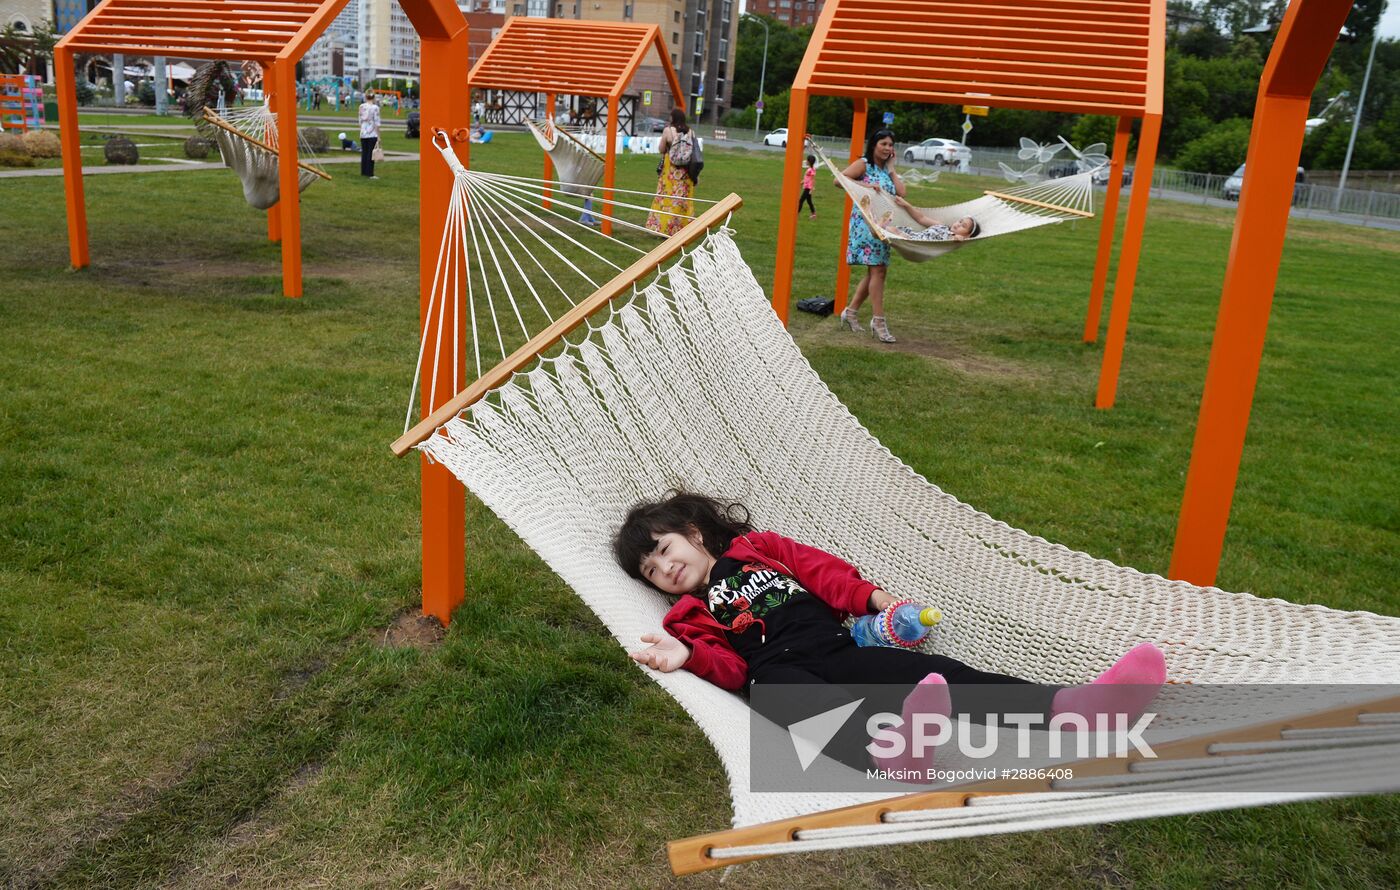 Summer in Kazan